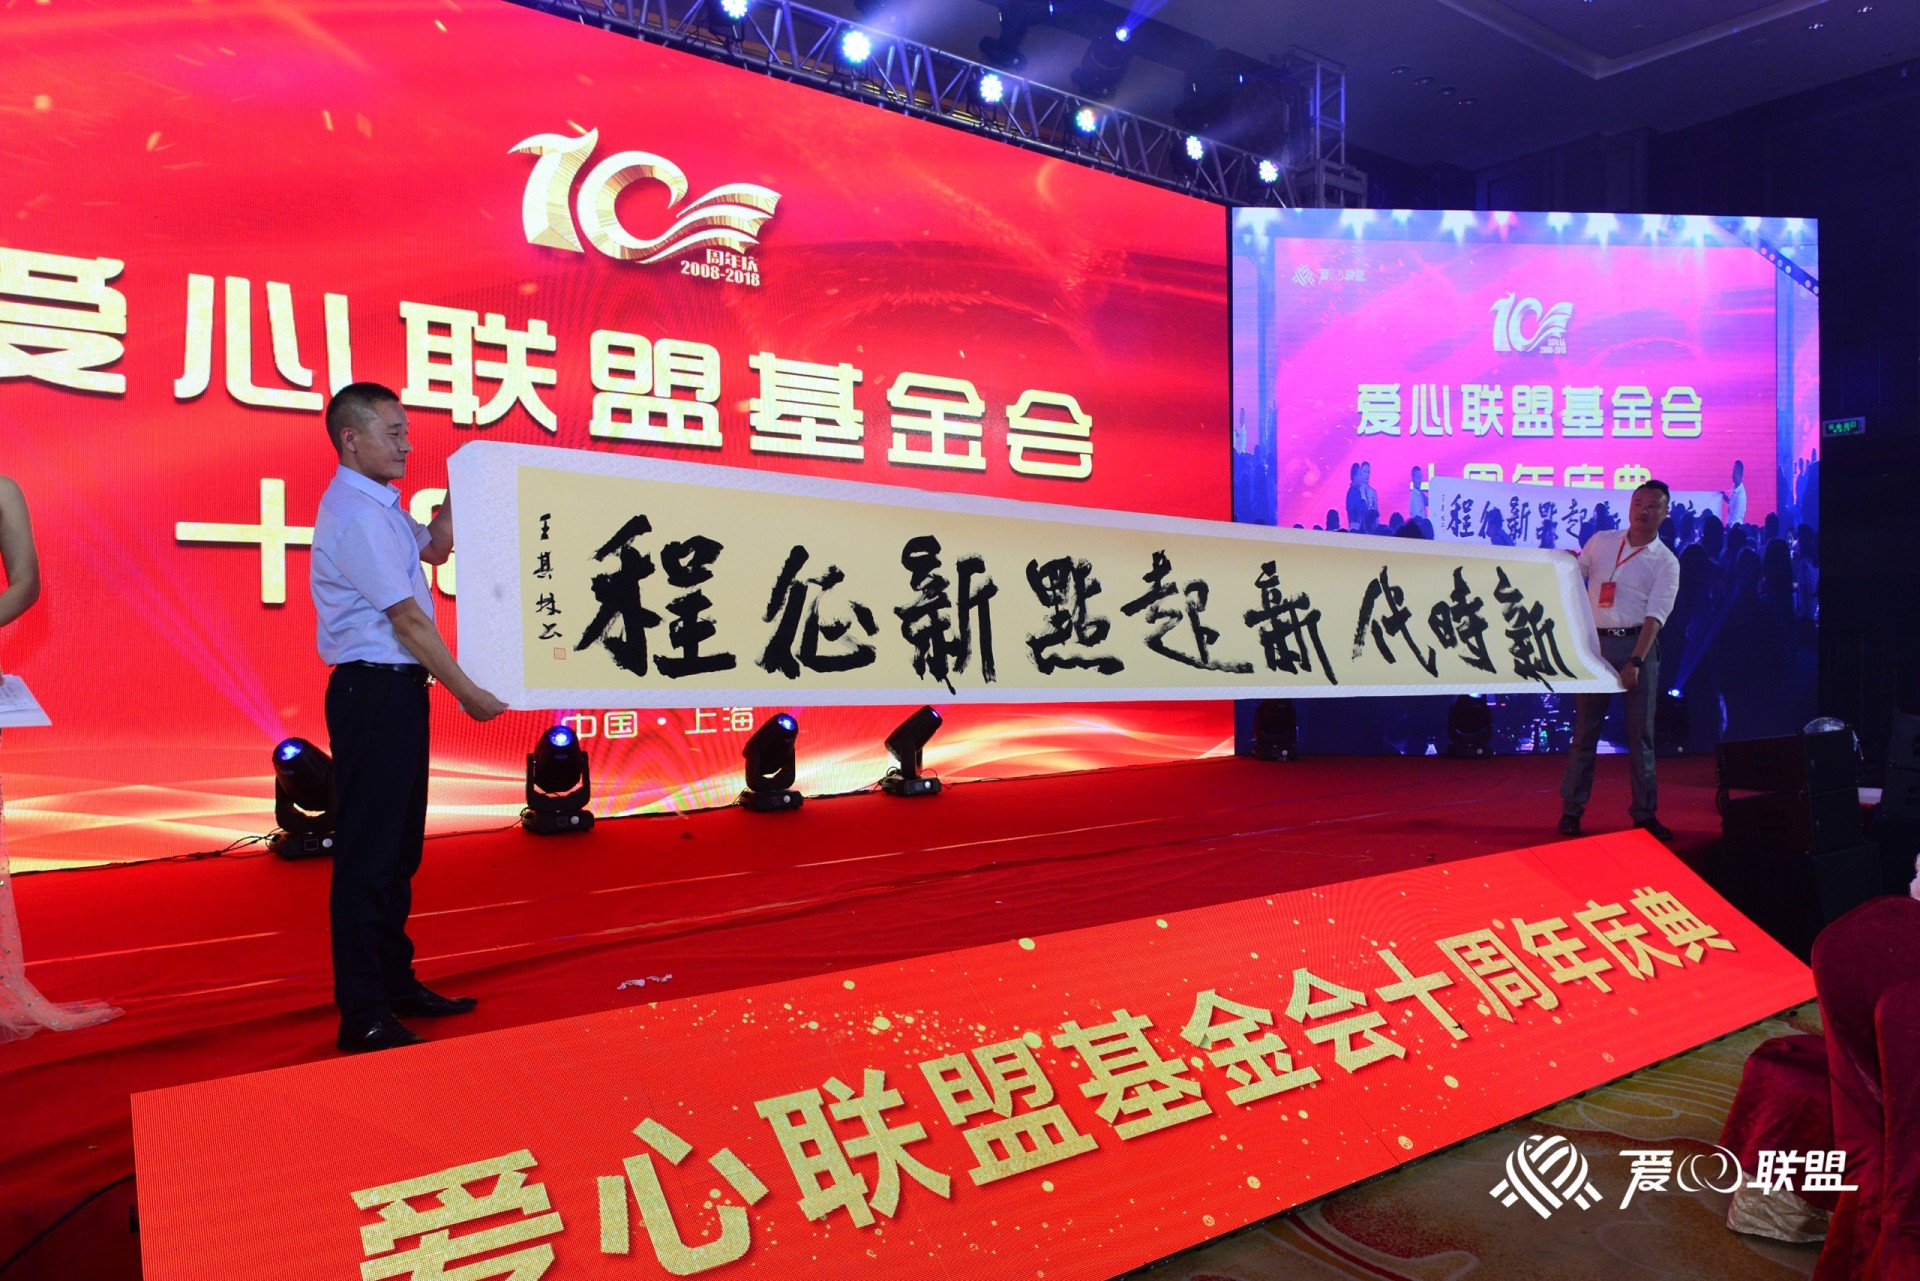 上海折叠椅出租 金山区室内大屏设备租赁公司 公司年会活动策划执行